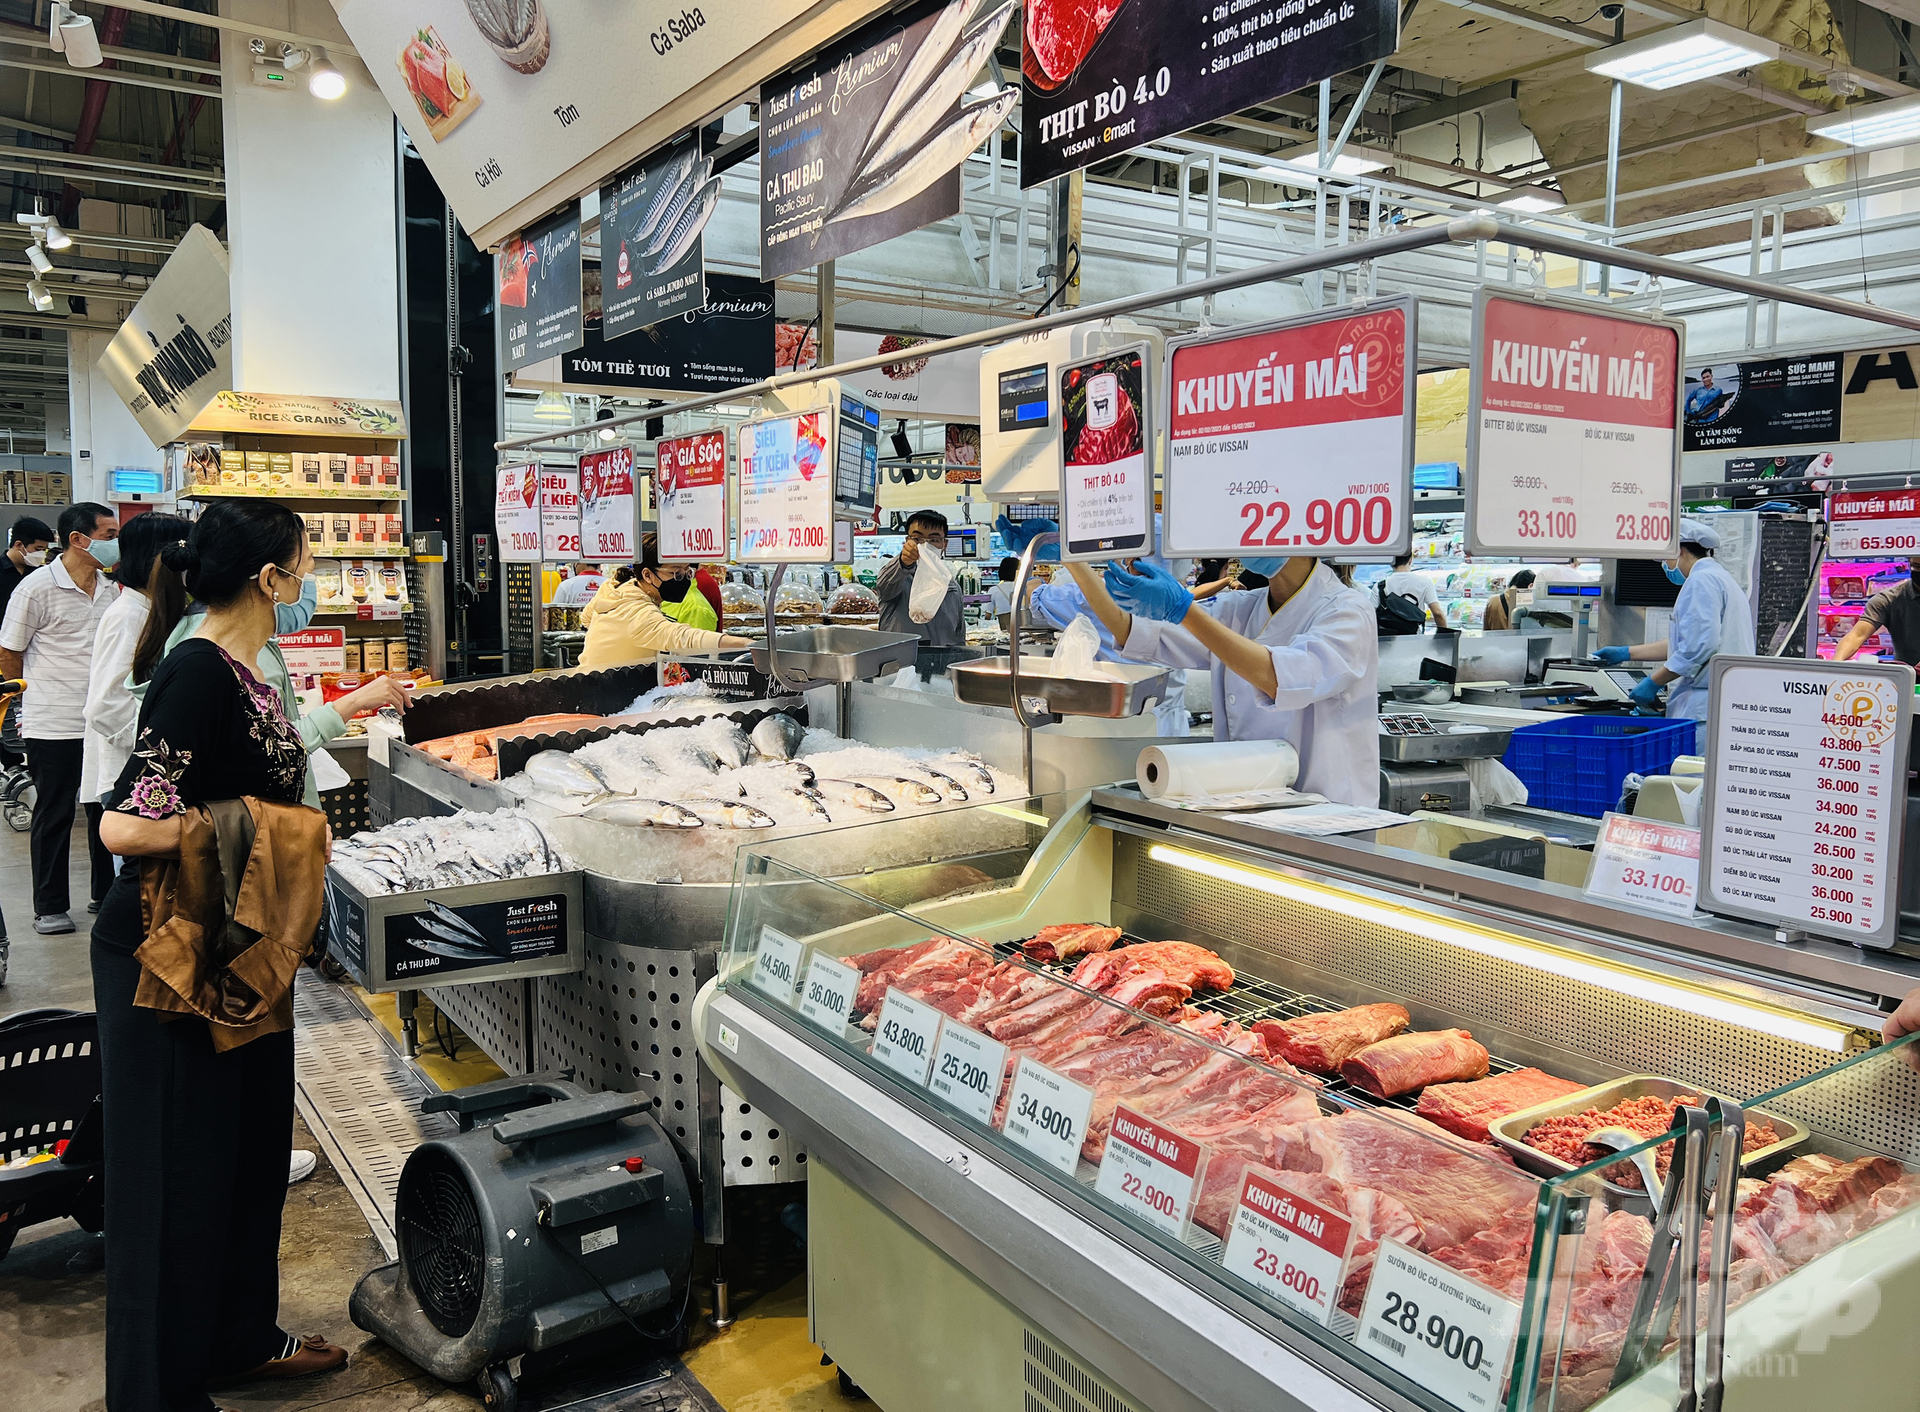 Các siêu thị hiện đại tung nhiều chương tình khuyến mãi để kích cầu tiêu dùng. Ảnh: Nguyễn Thủy.